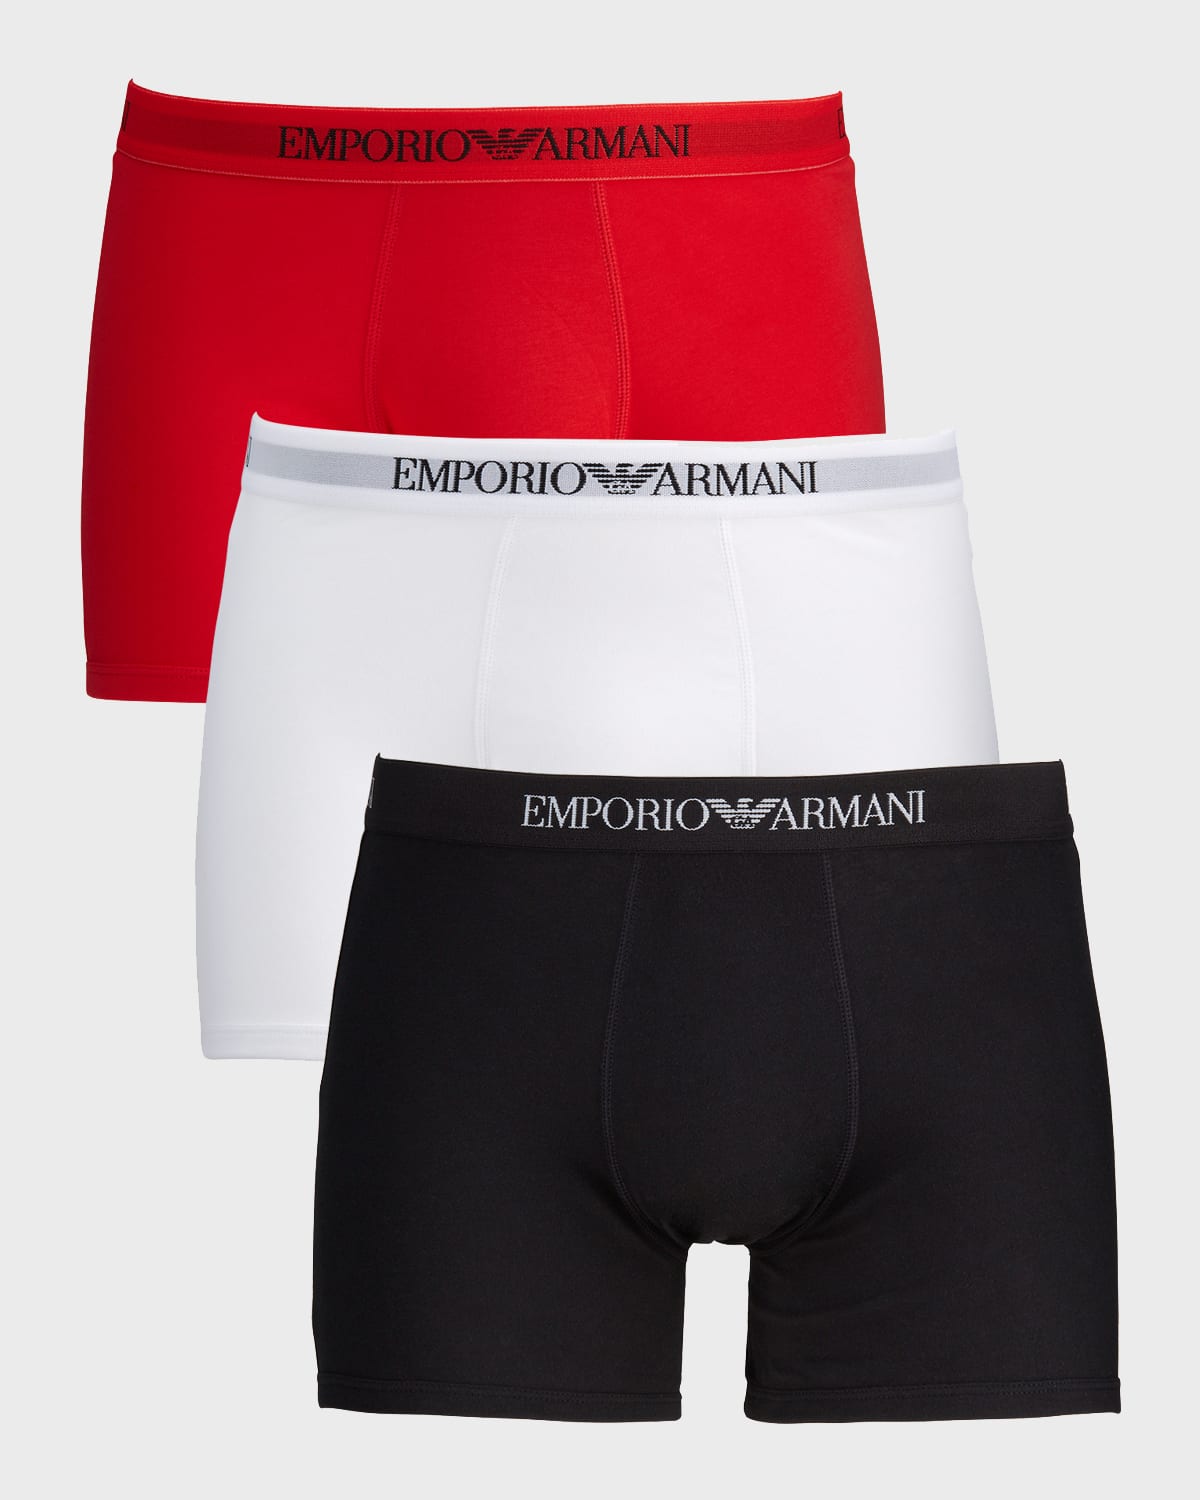 Emporio Armani Men's 3-pack Boxer Briefs In Red/white/black